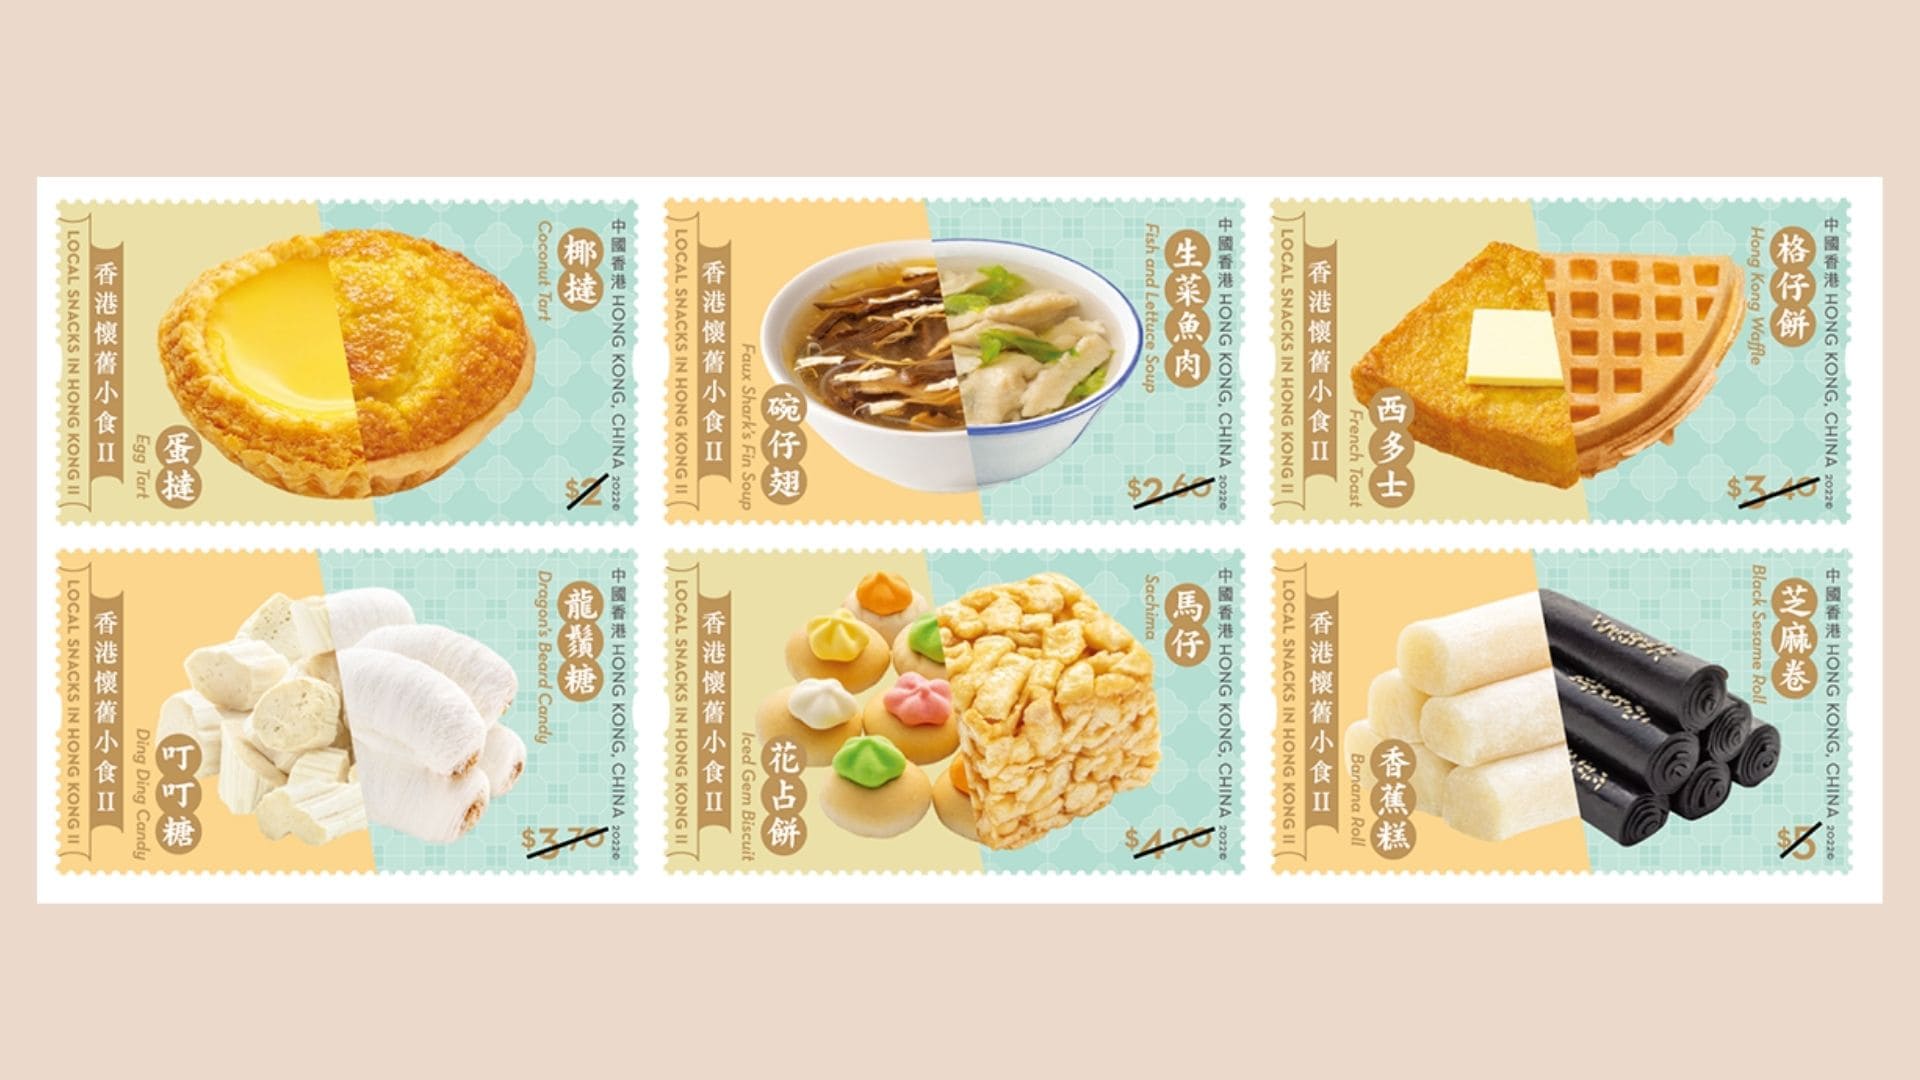 「香港懷舊小食II」特別郵票5月26日起發售 經典小食蛋撻、格仔餅化身主角